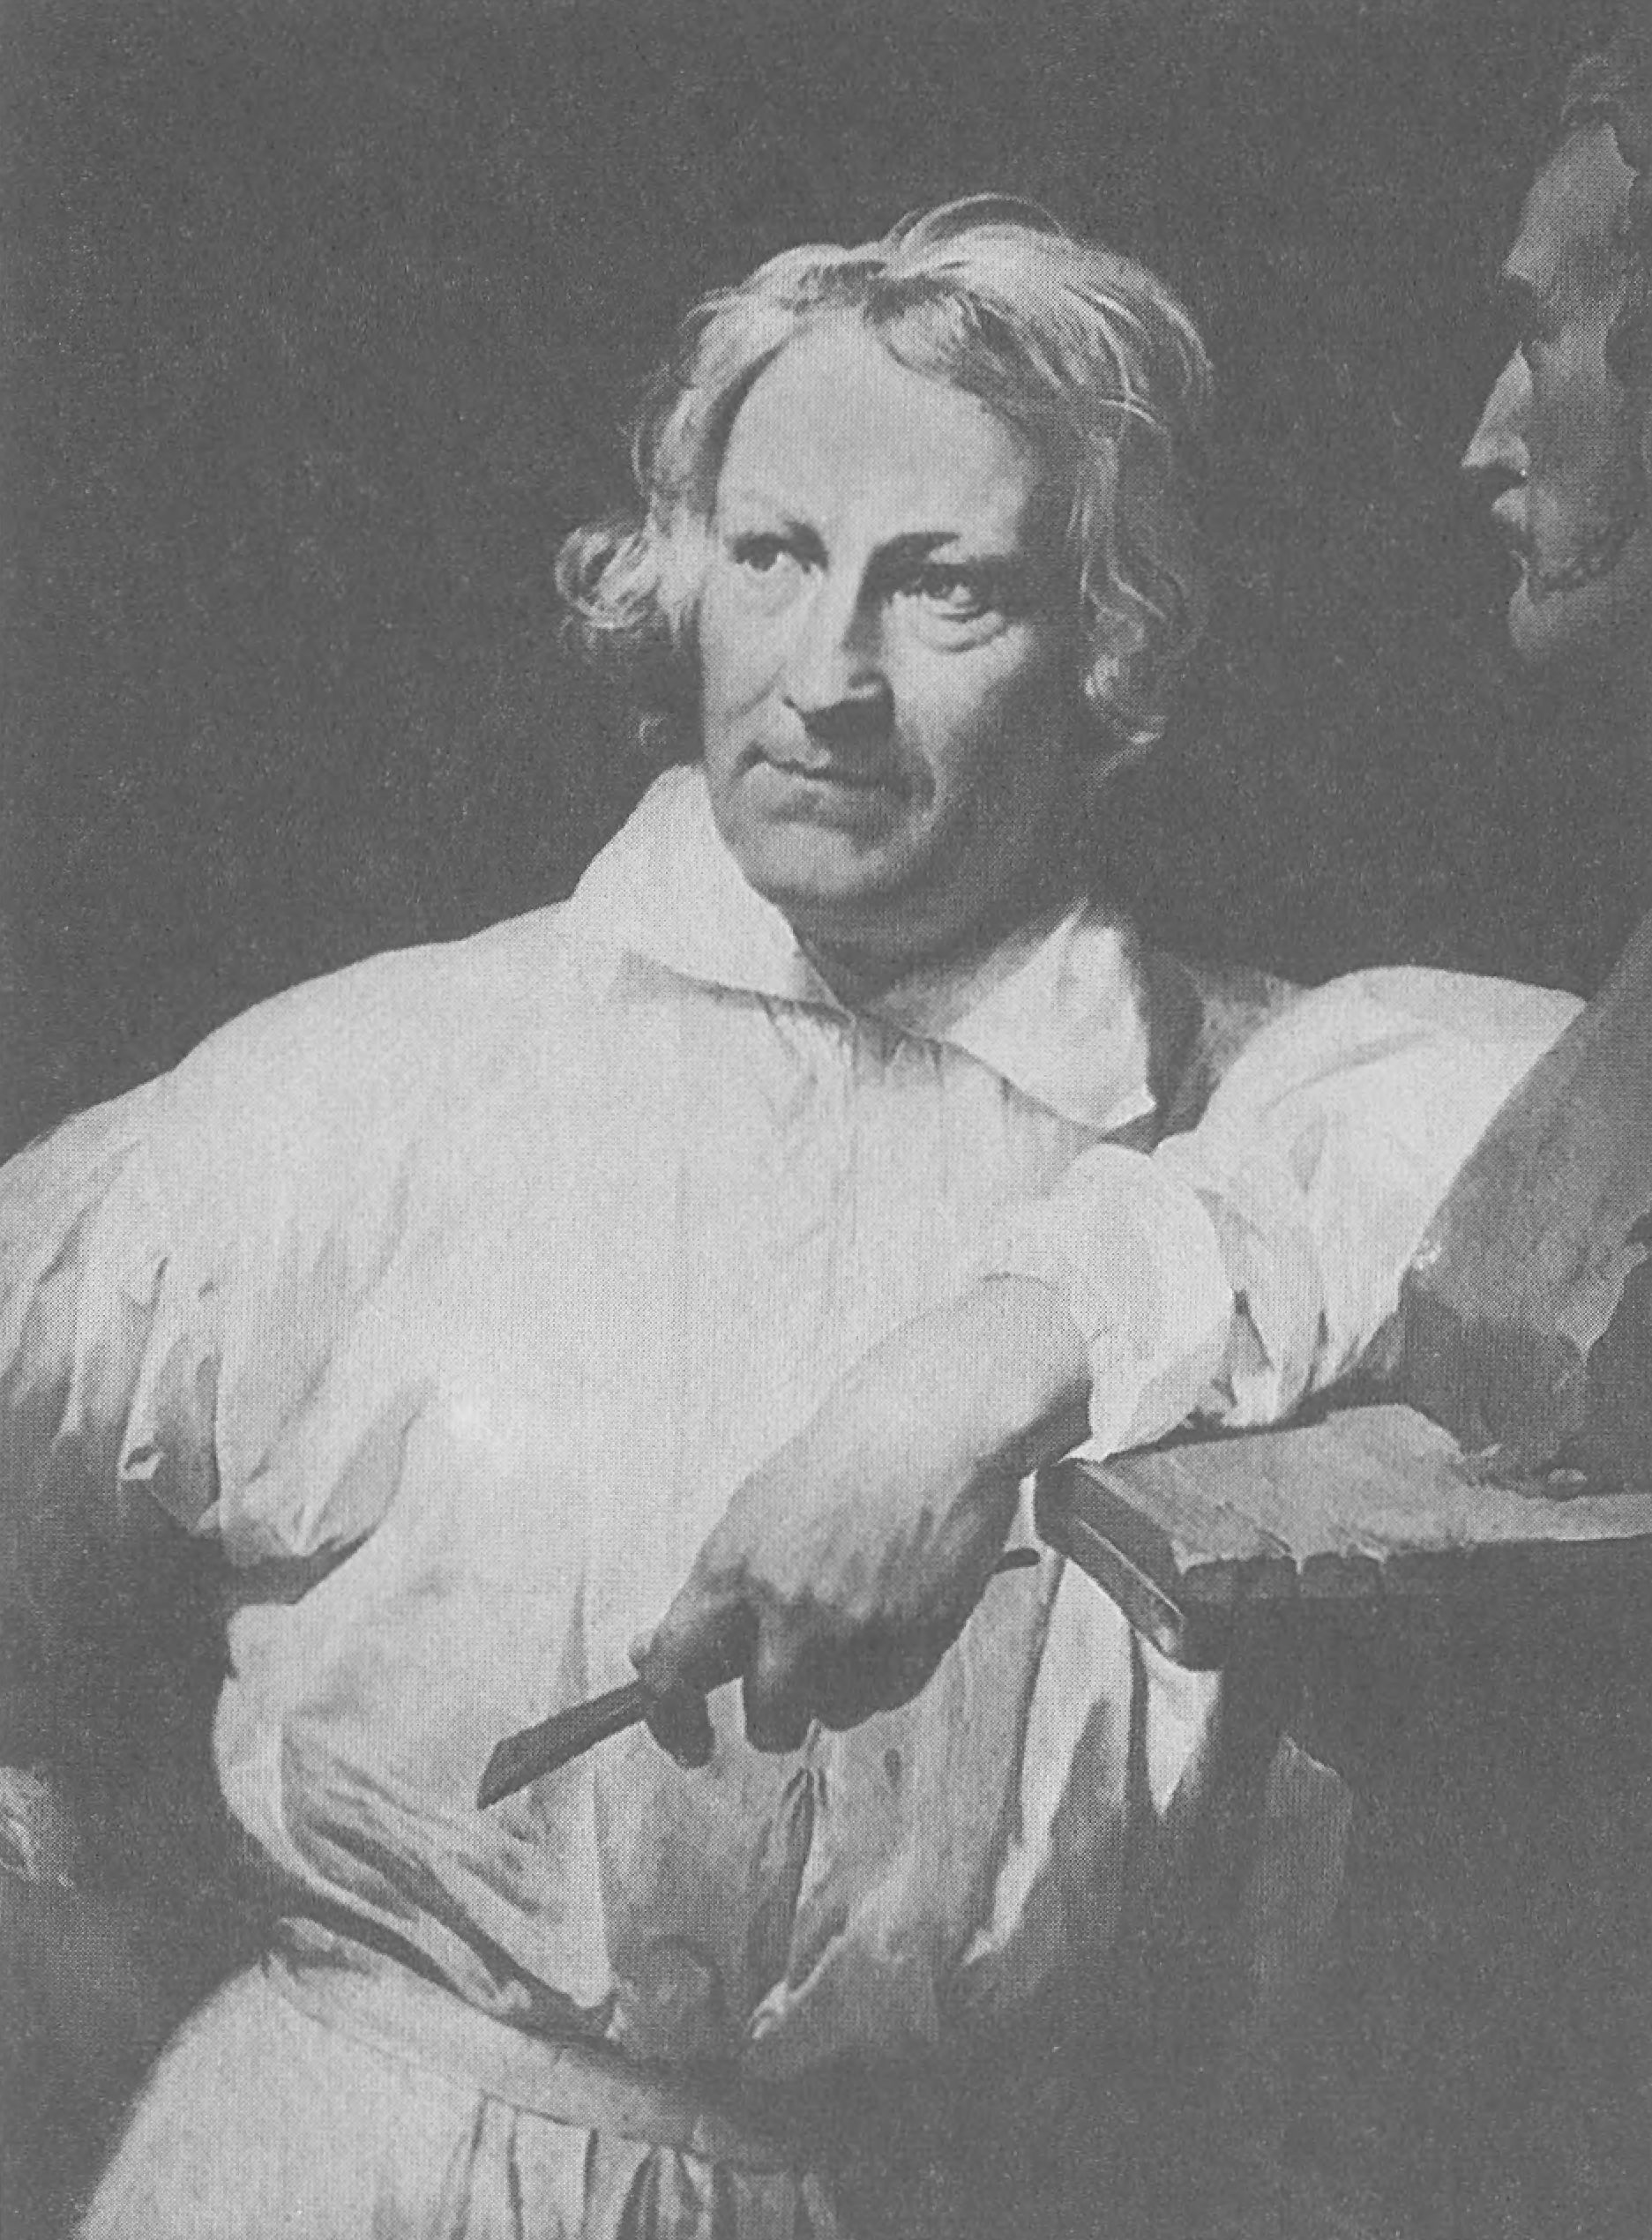 Скульптор. Бертель Торвальдсен, близкий друг писателя. Портрет работы О. Верне